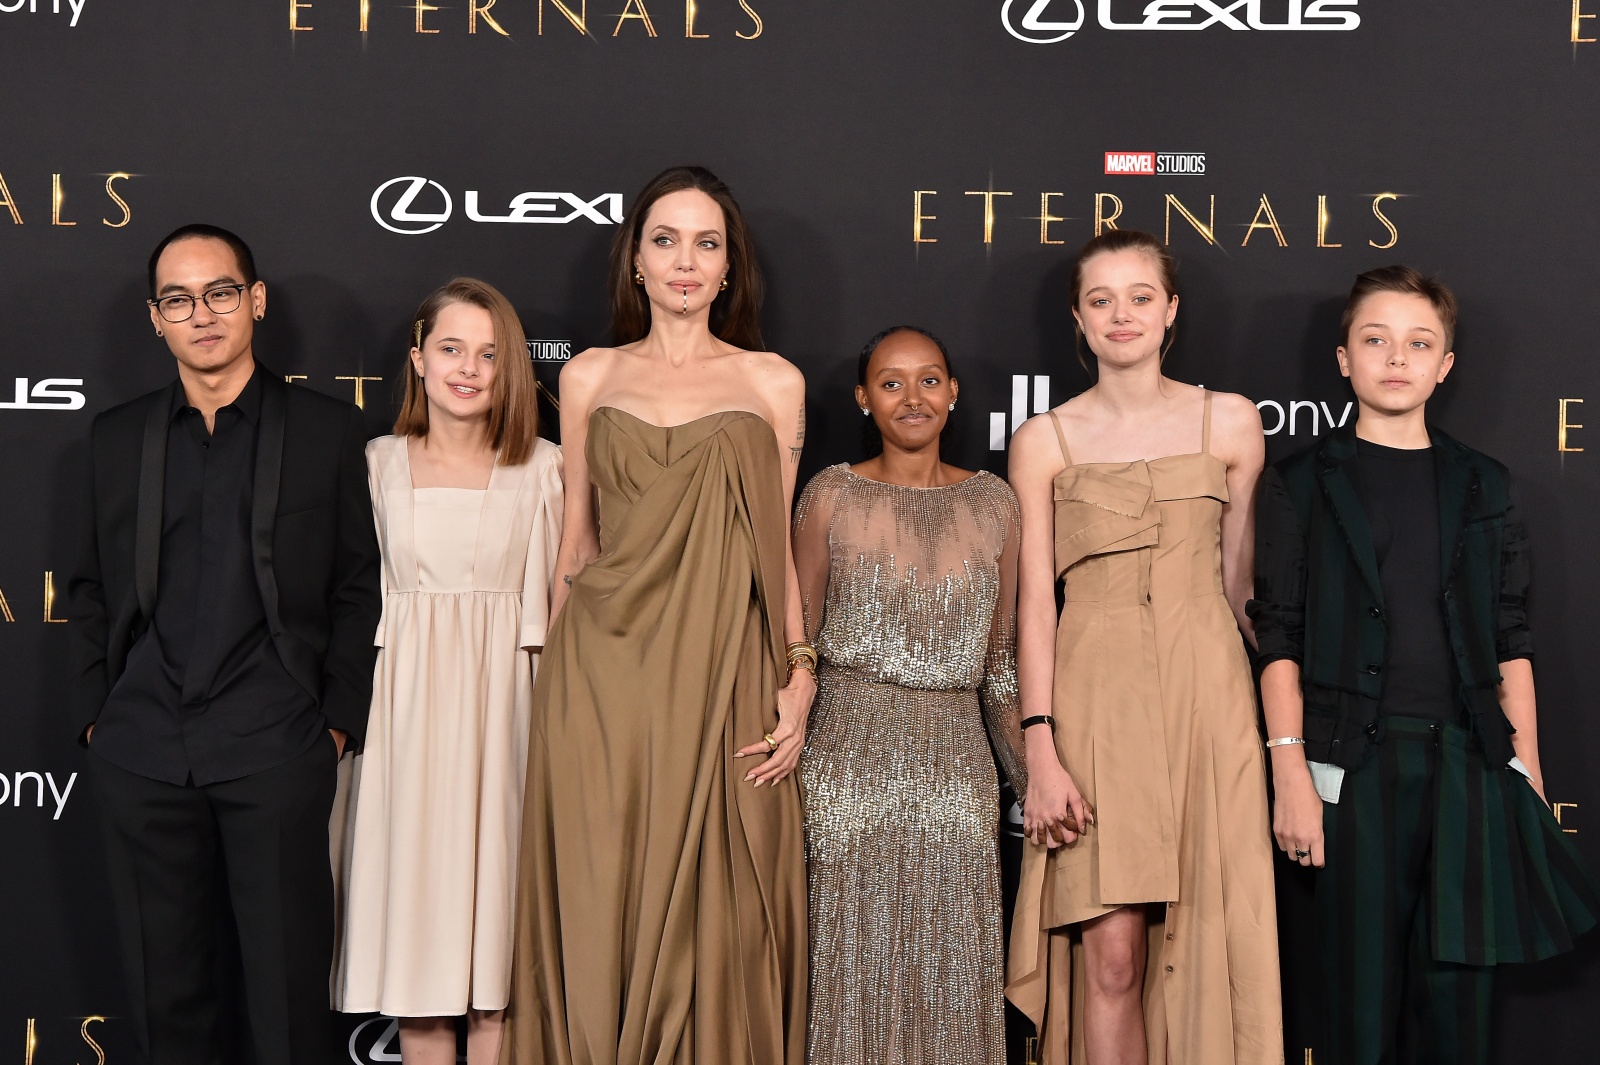 Aniversário Angelina Jolie: relembre seus 5 maiores personagens